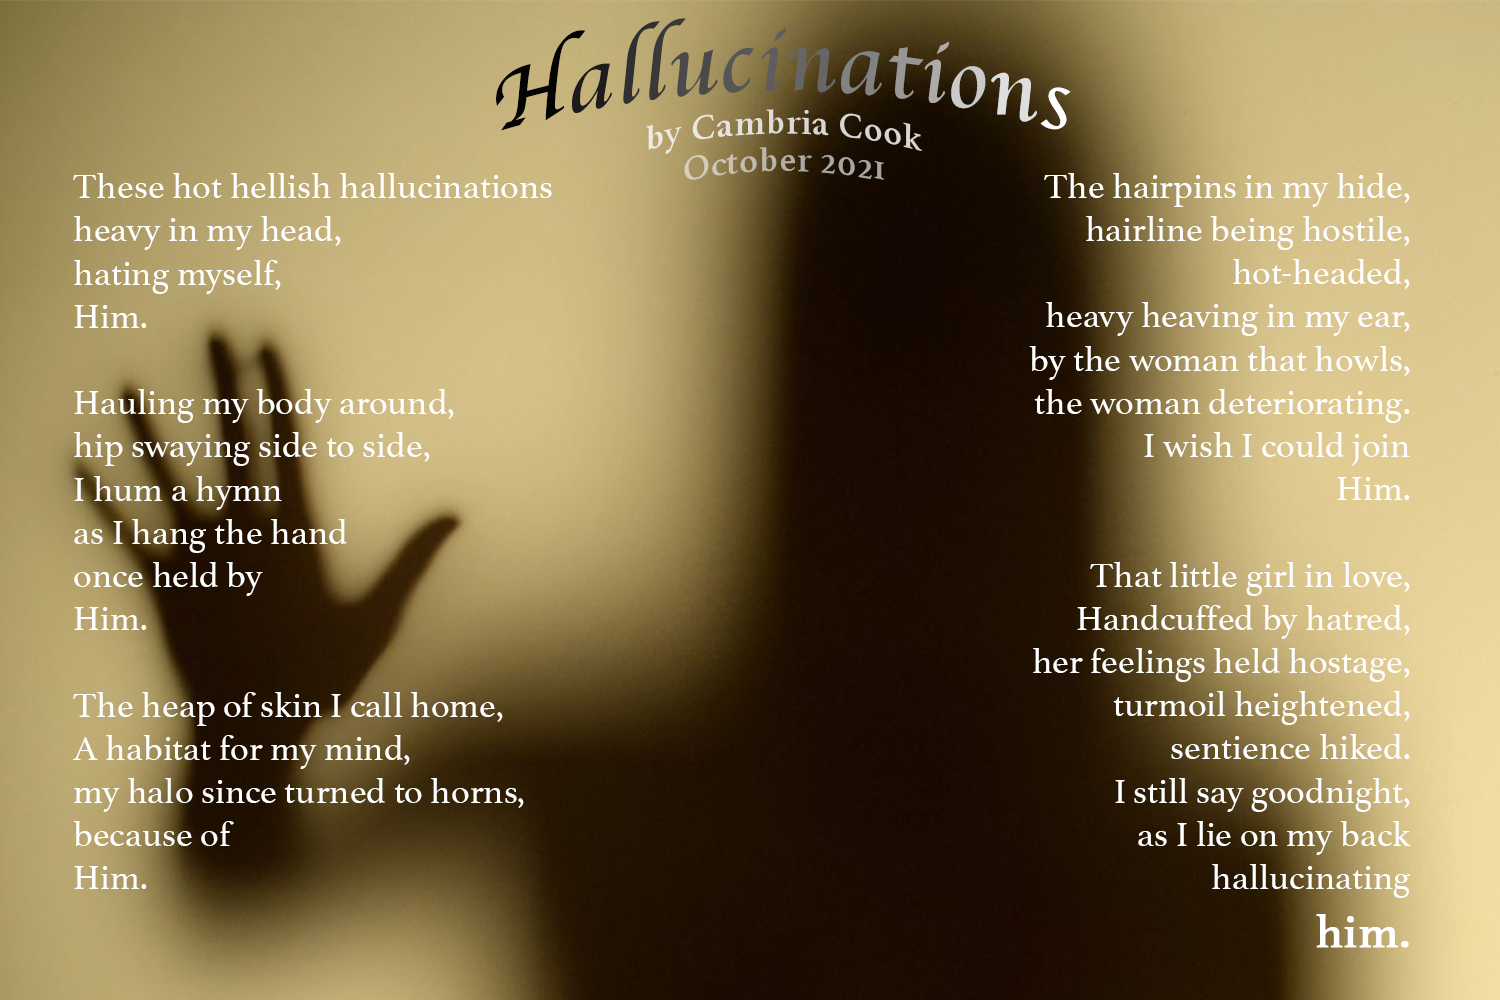 Poem by Cambria Cook Hallucinations